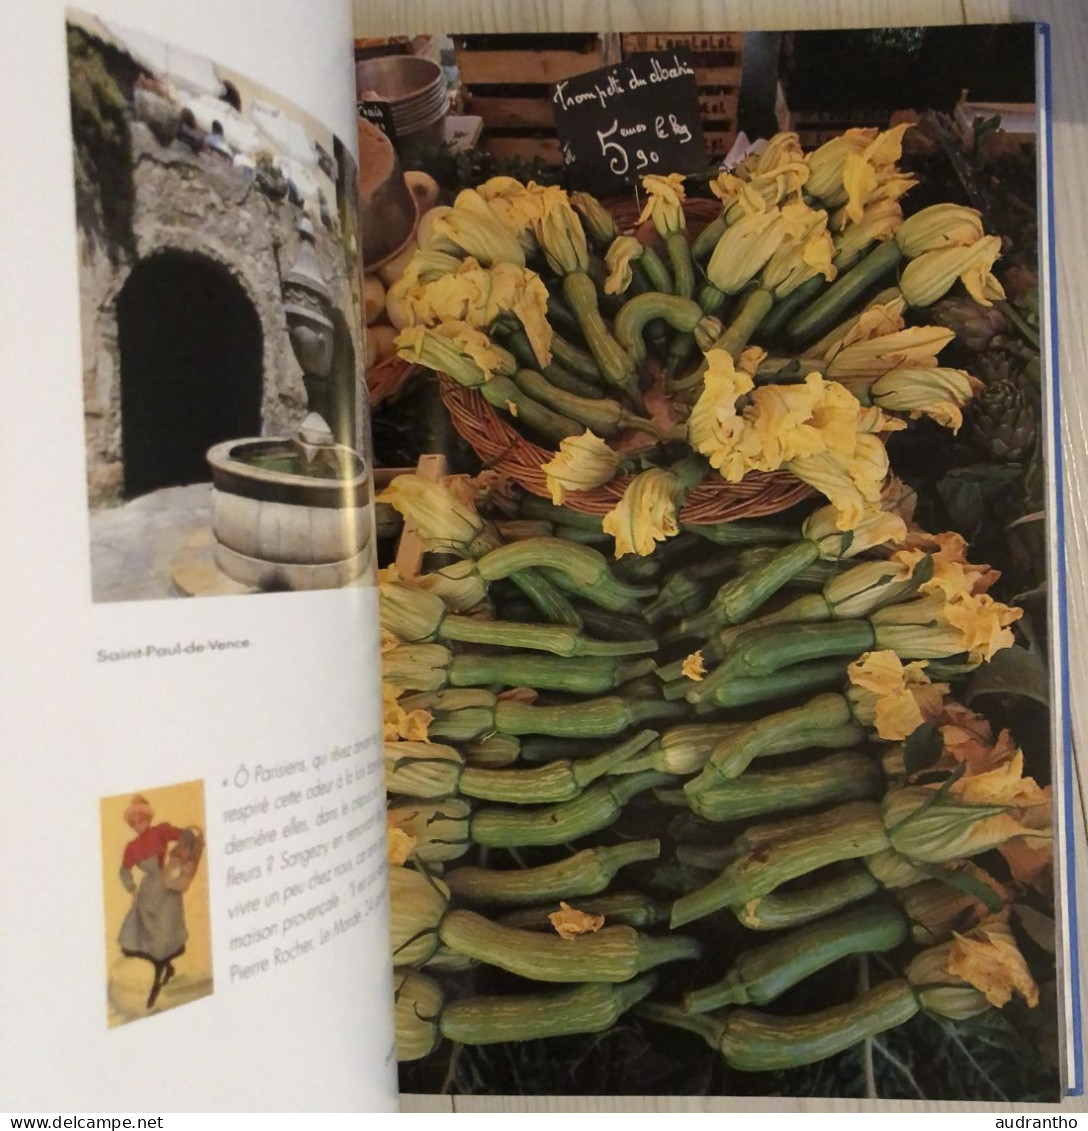 livre COTE D'AZUR - miracle de lumière - photos C.Durant - Texte R.Colonna d'Istria - Pélican 2004